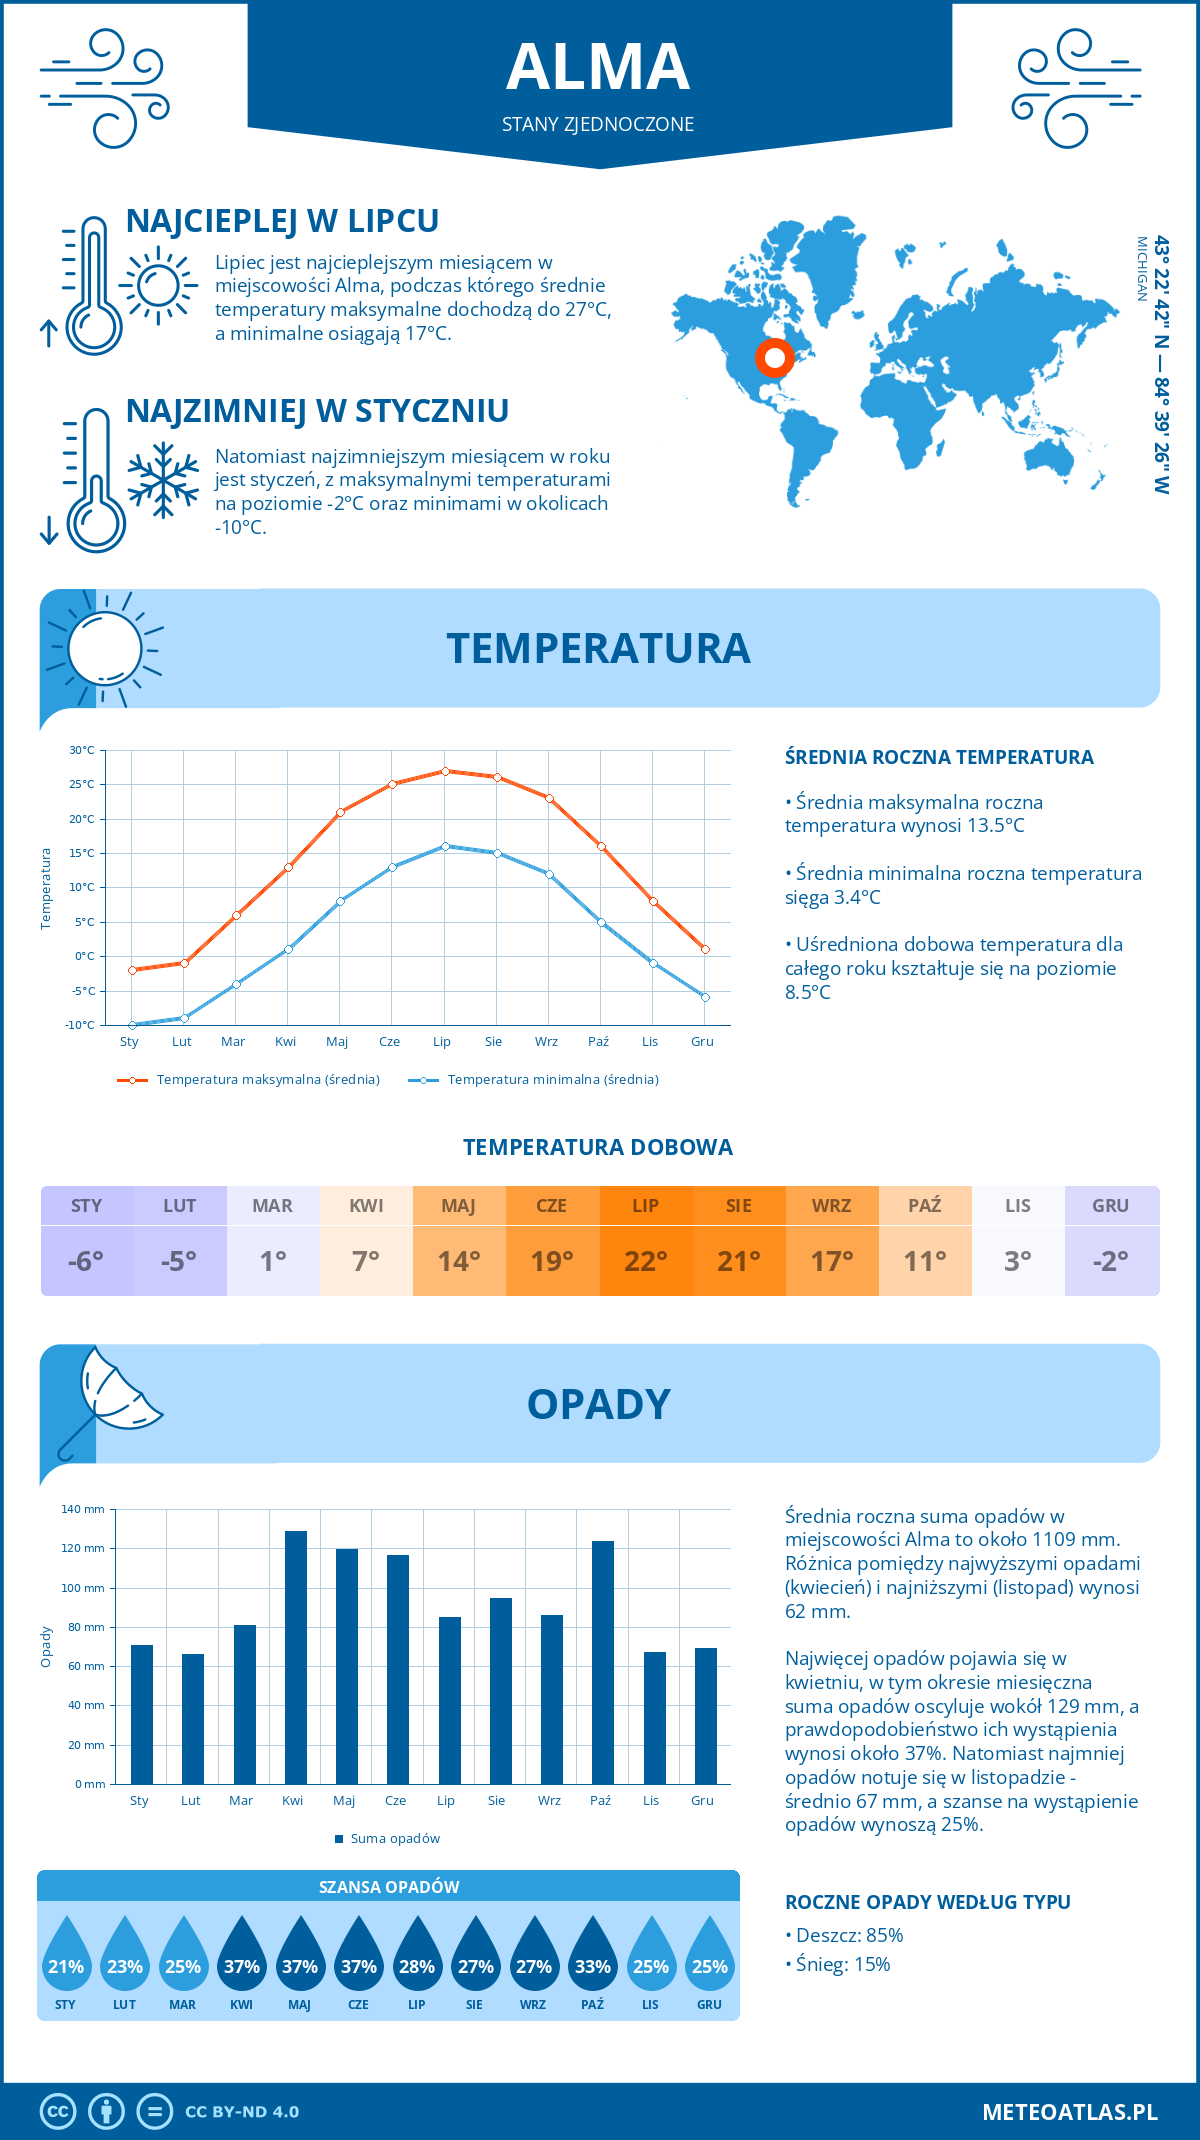 Pogoda Alma (Stany Zjednoczone). Temperatura oraz opady.